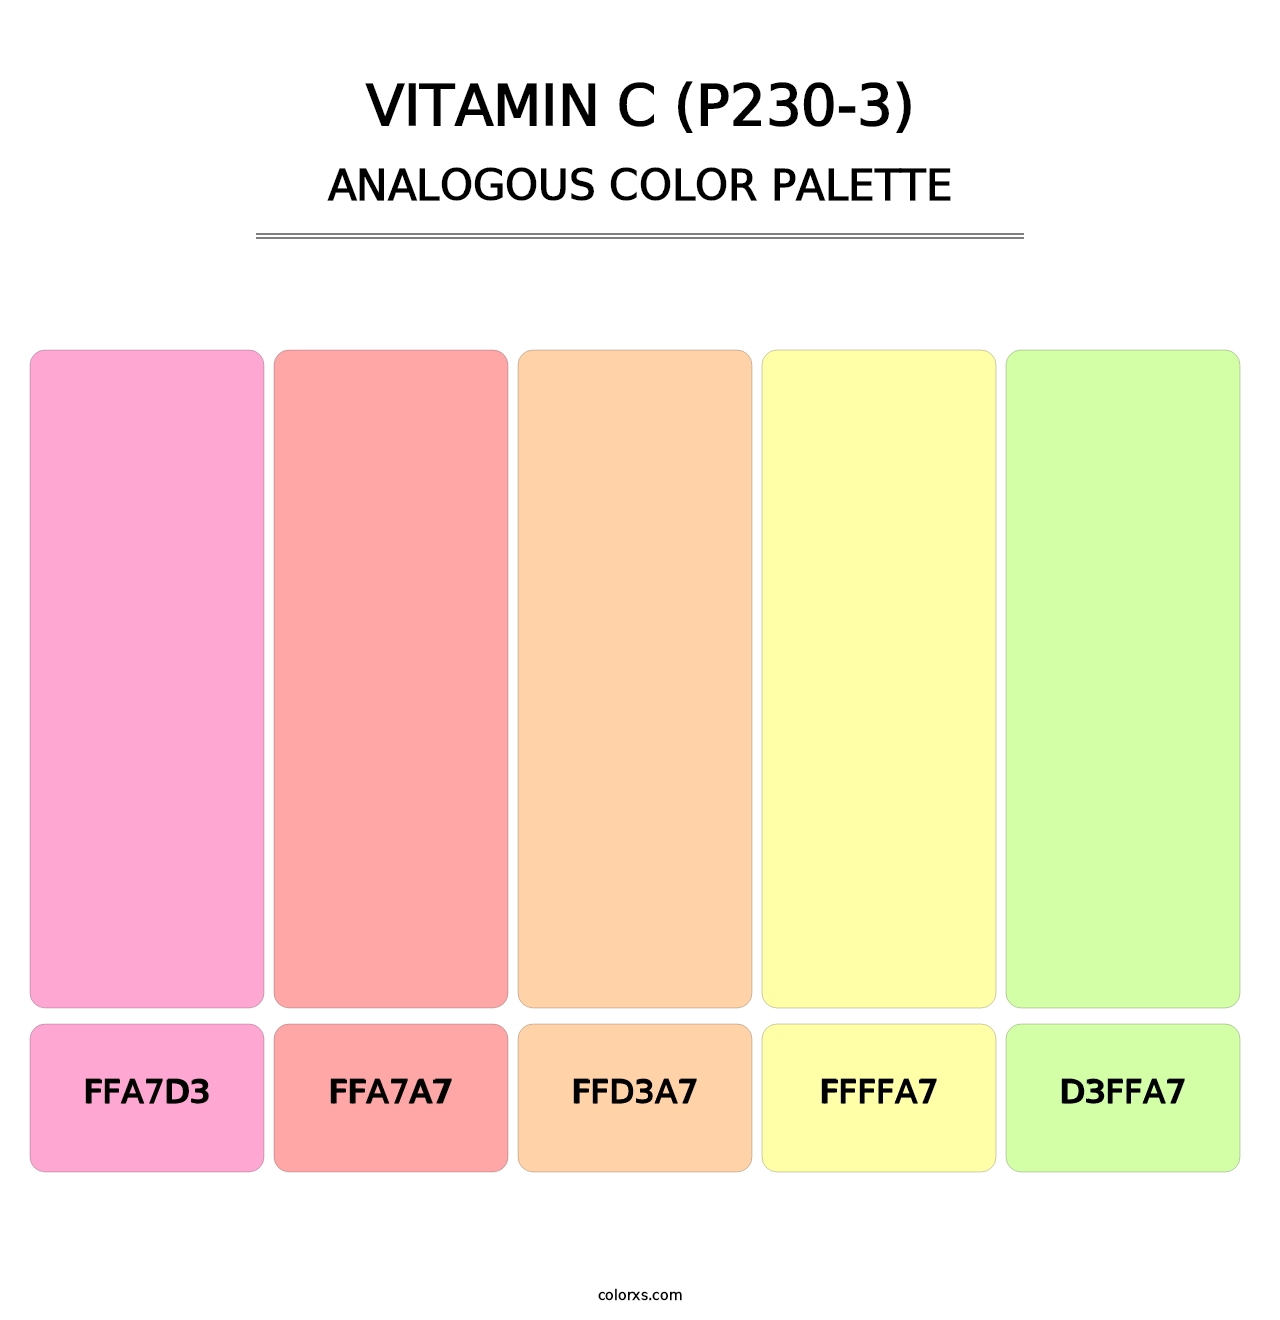 Vitamin C (P230-3) - Analogous Color Palette